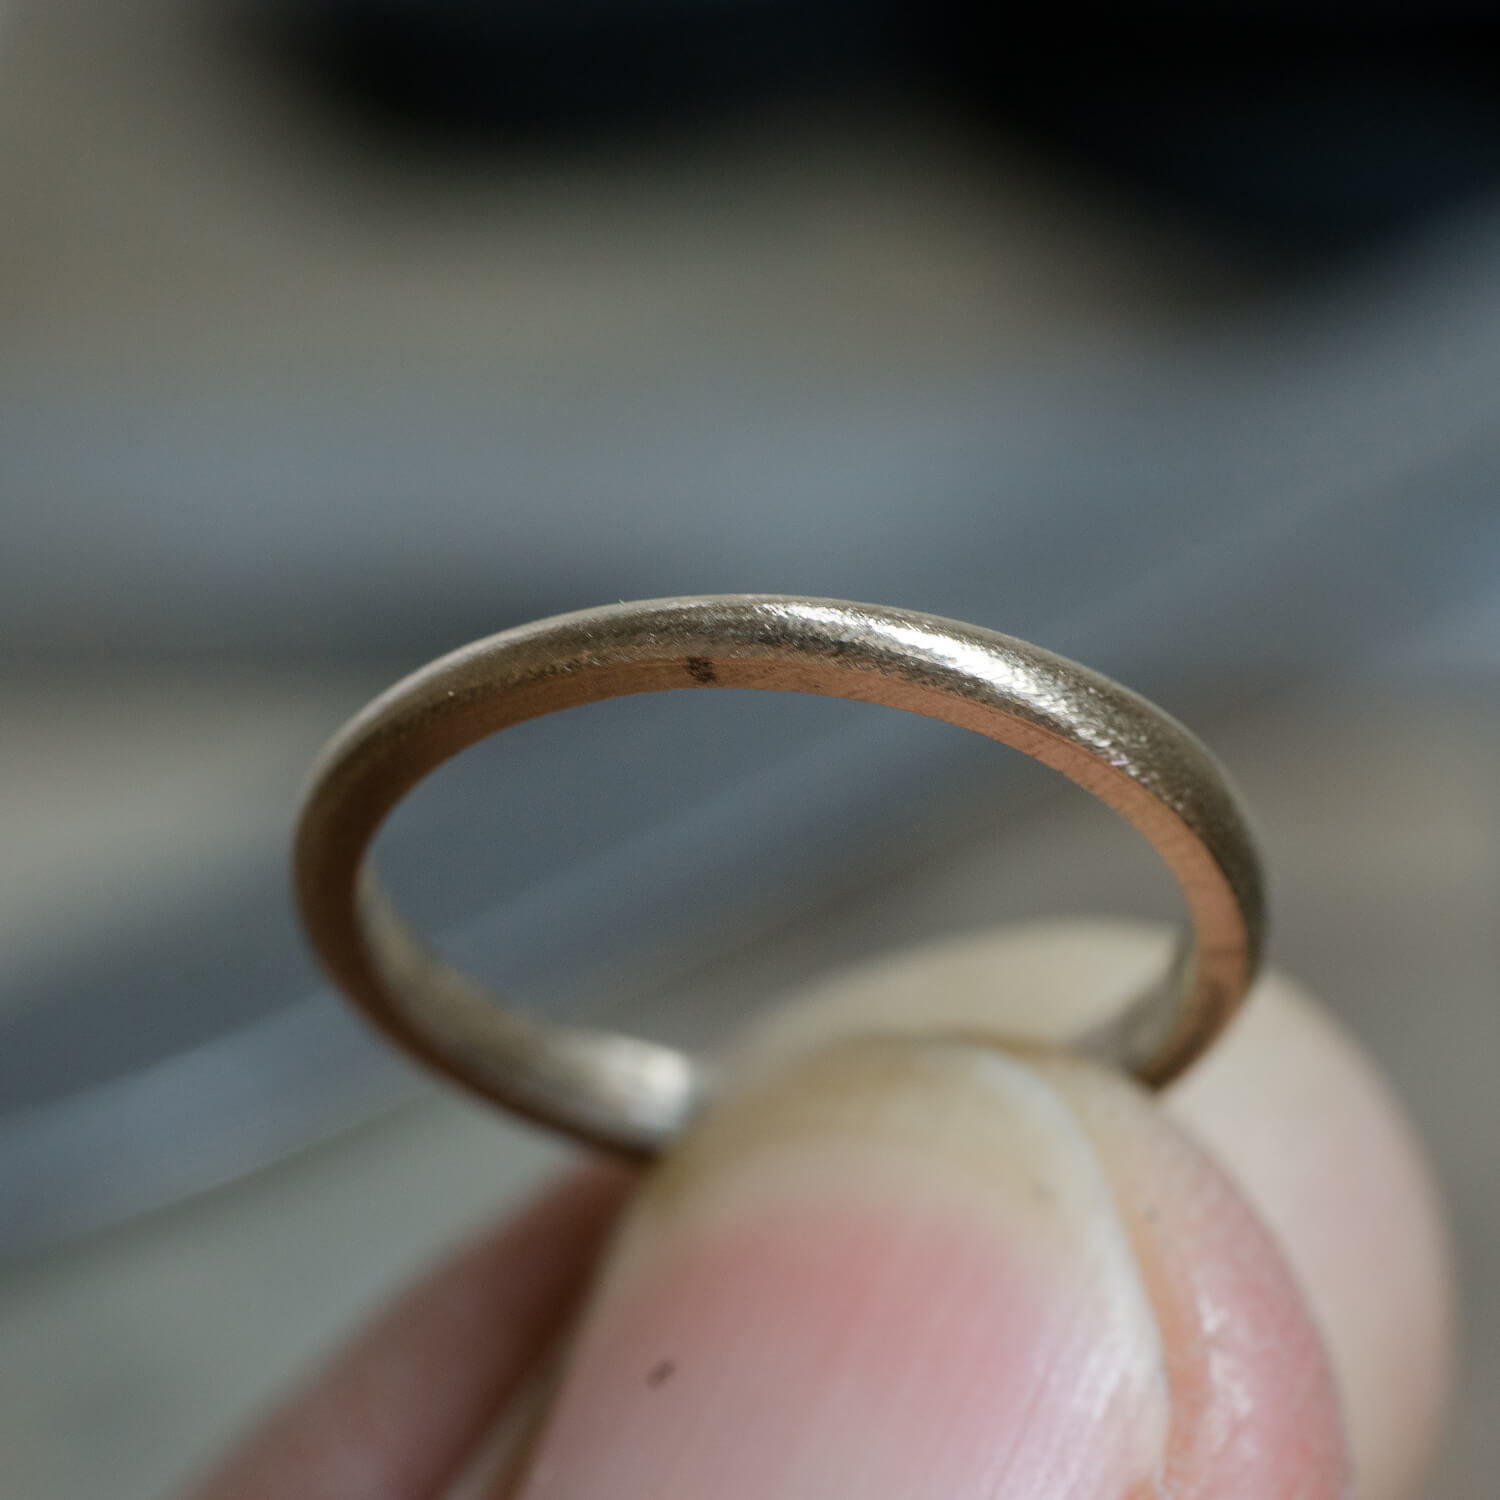 場面５　オーダーメイドマリッジリングの制作風景　屋久島ジュエリーのアトリエ　ゴールド　屋久島のシダモチーフ　屋久島でつくる結婚指輪